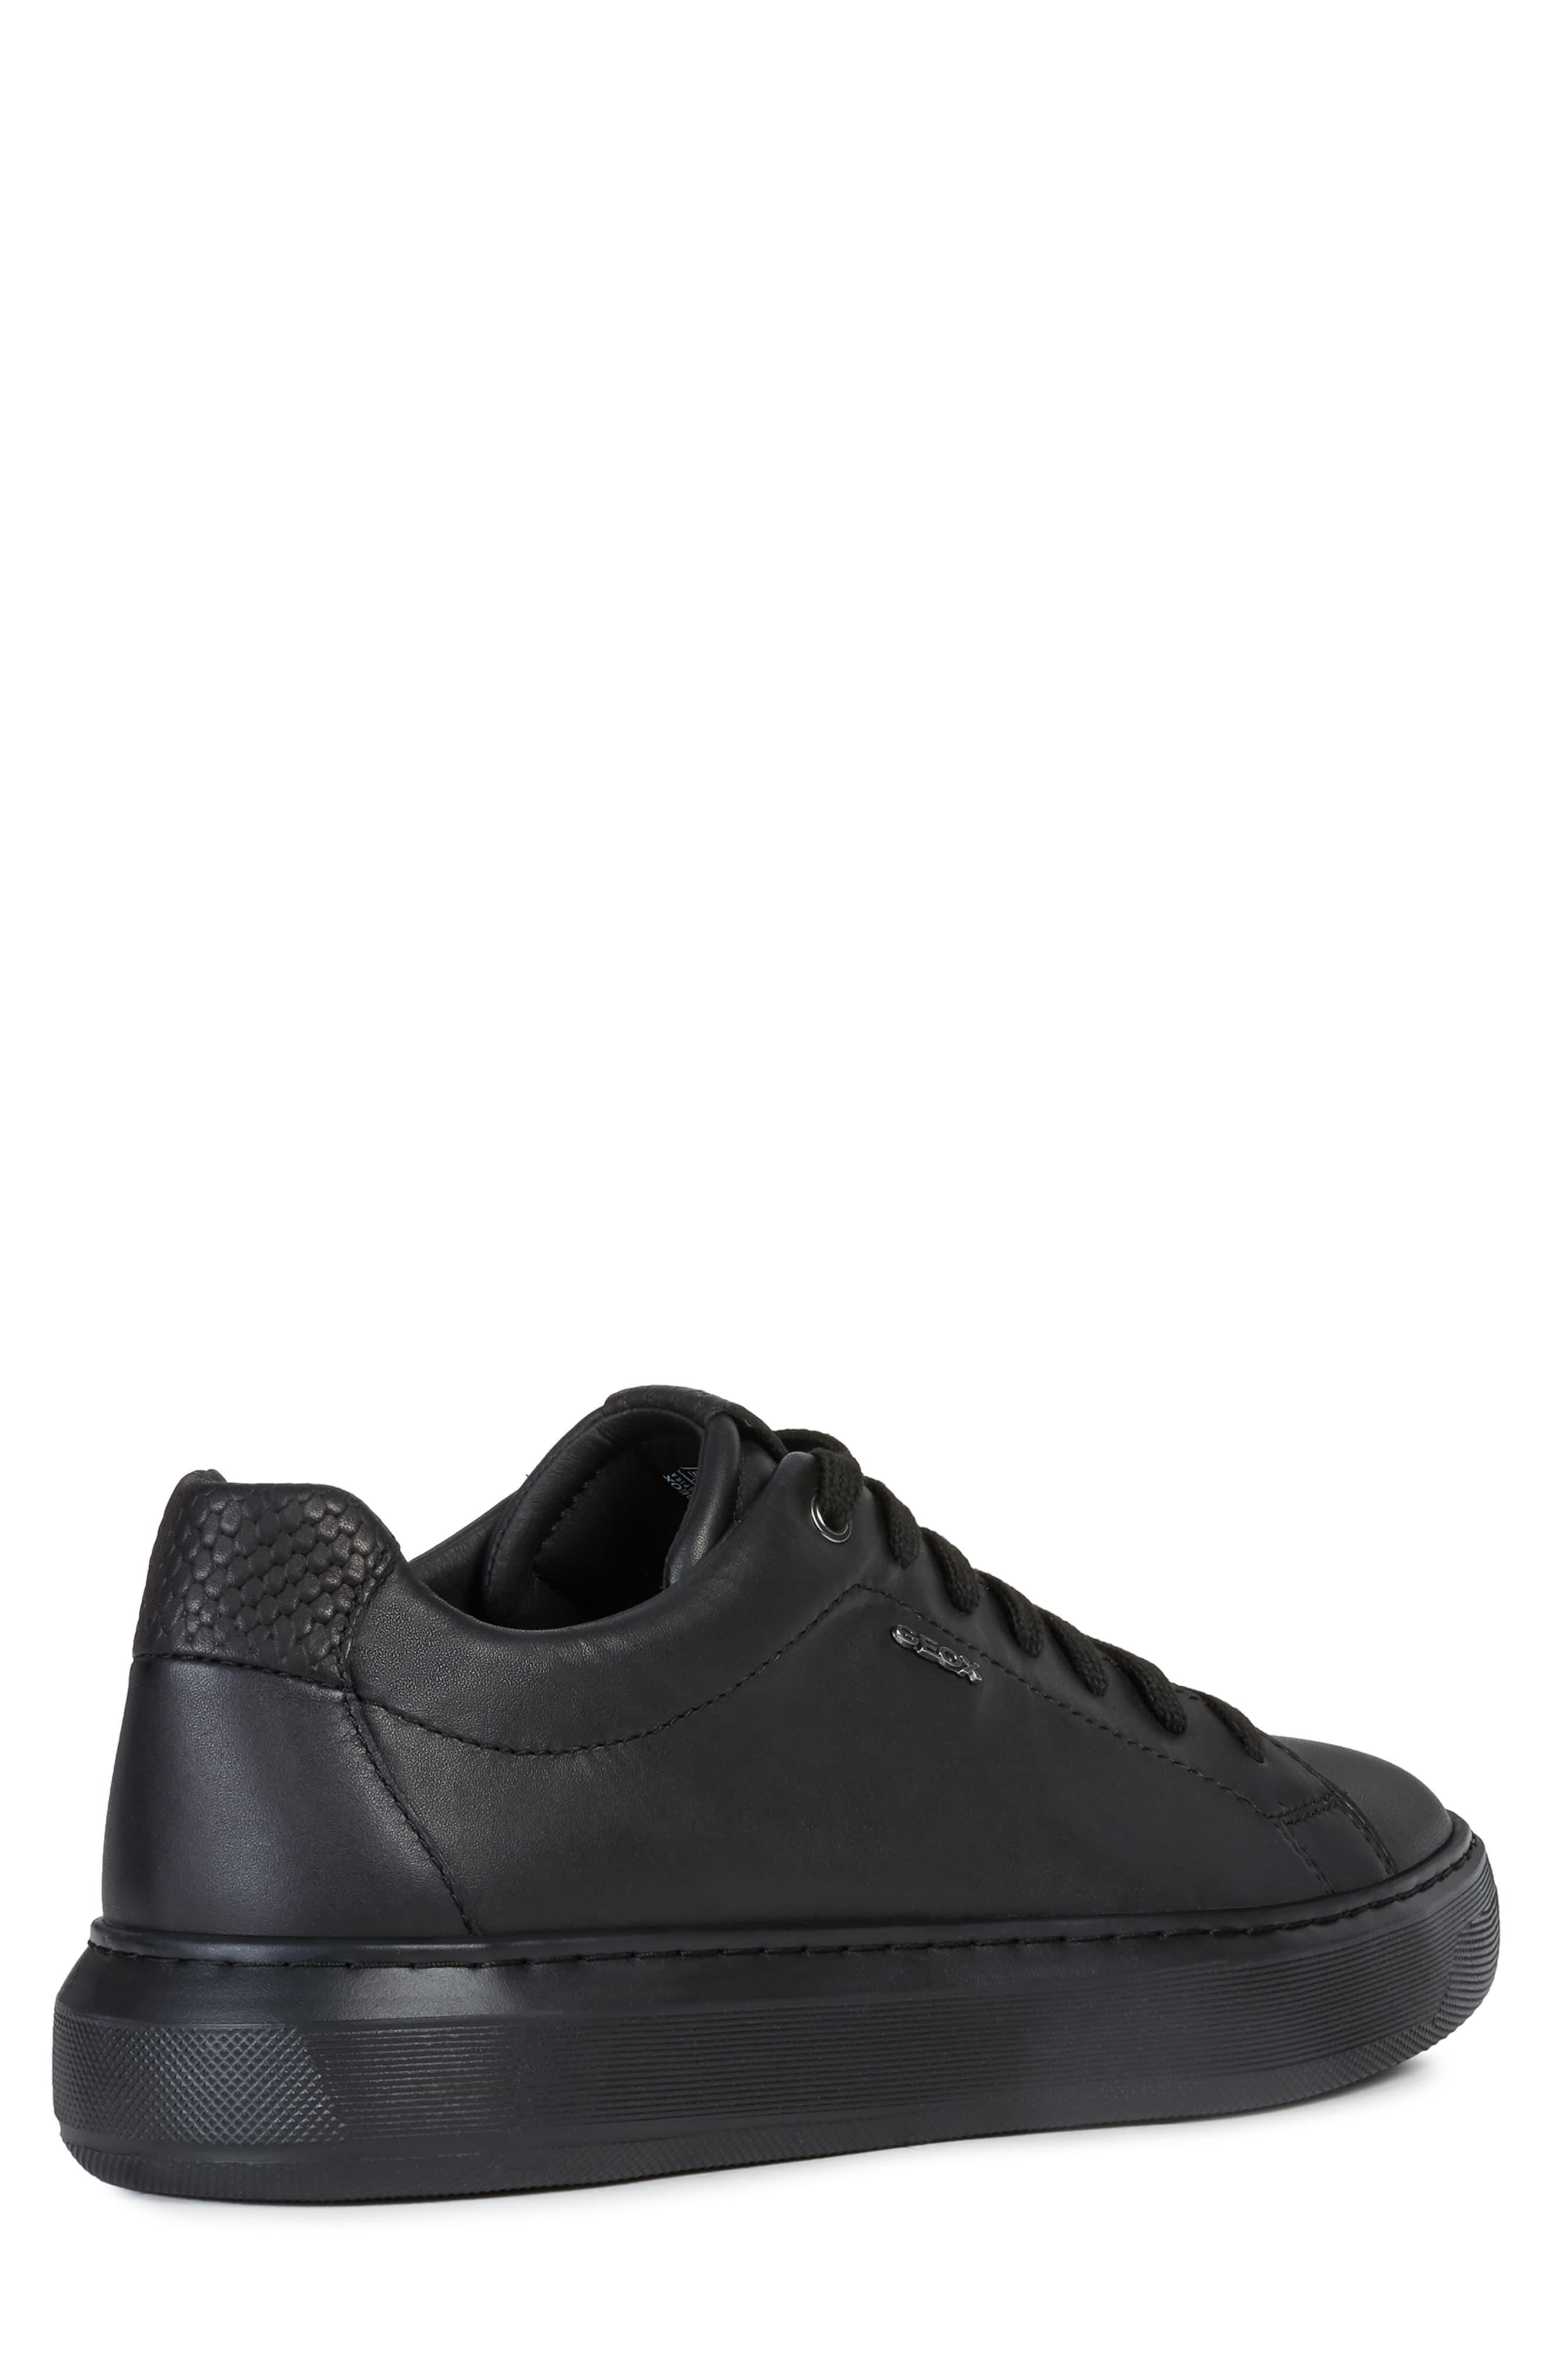 Geox Leather Deiven 16 Sneaker in Black 